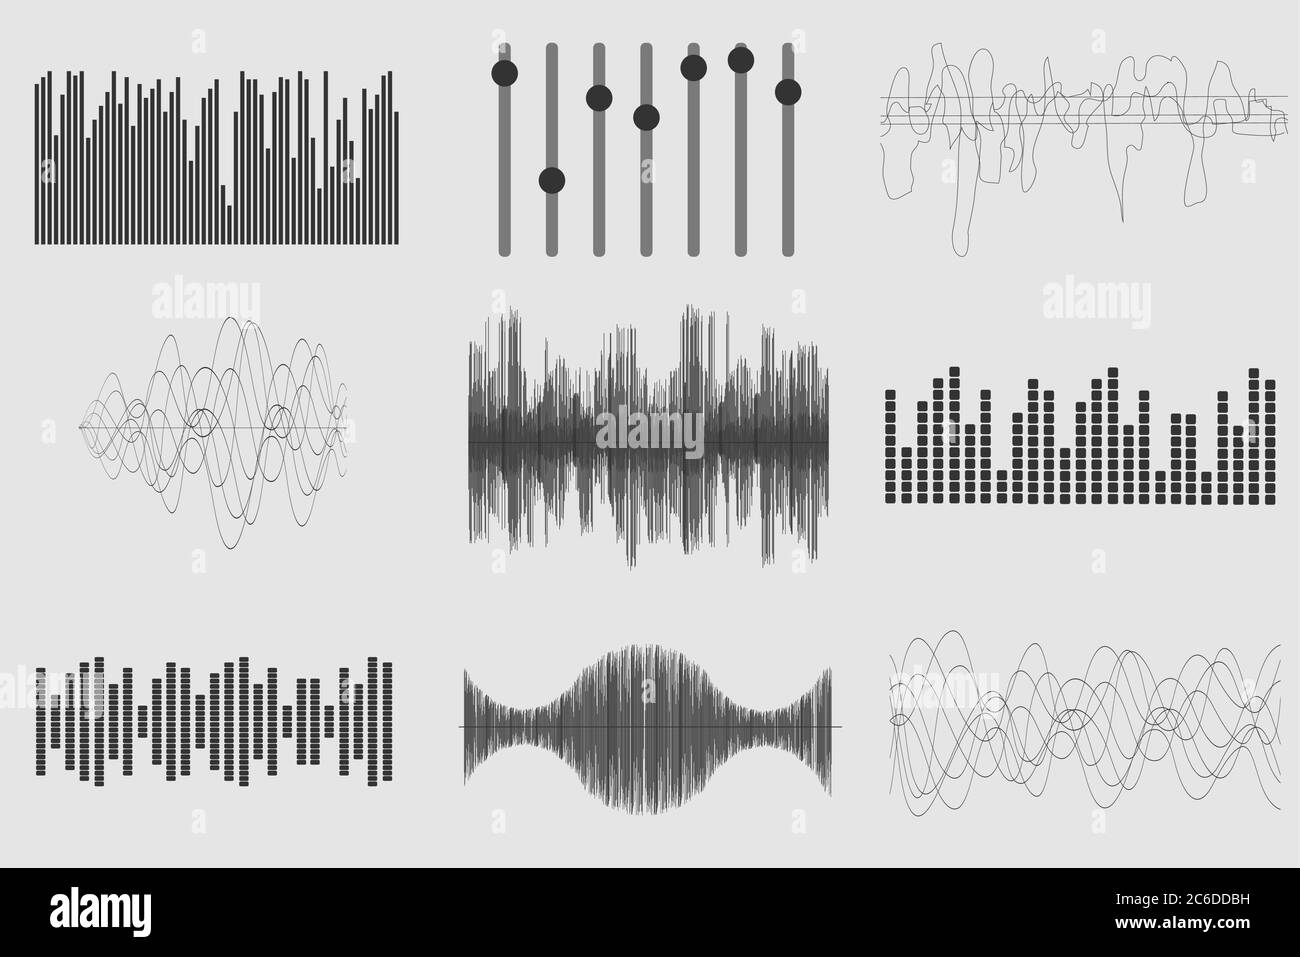 Schwarze Musik auf weißem Hintergrund. Audiotechnik, visueller musikalischer Puls. Vektorgrafik Stock Vektor